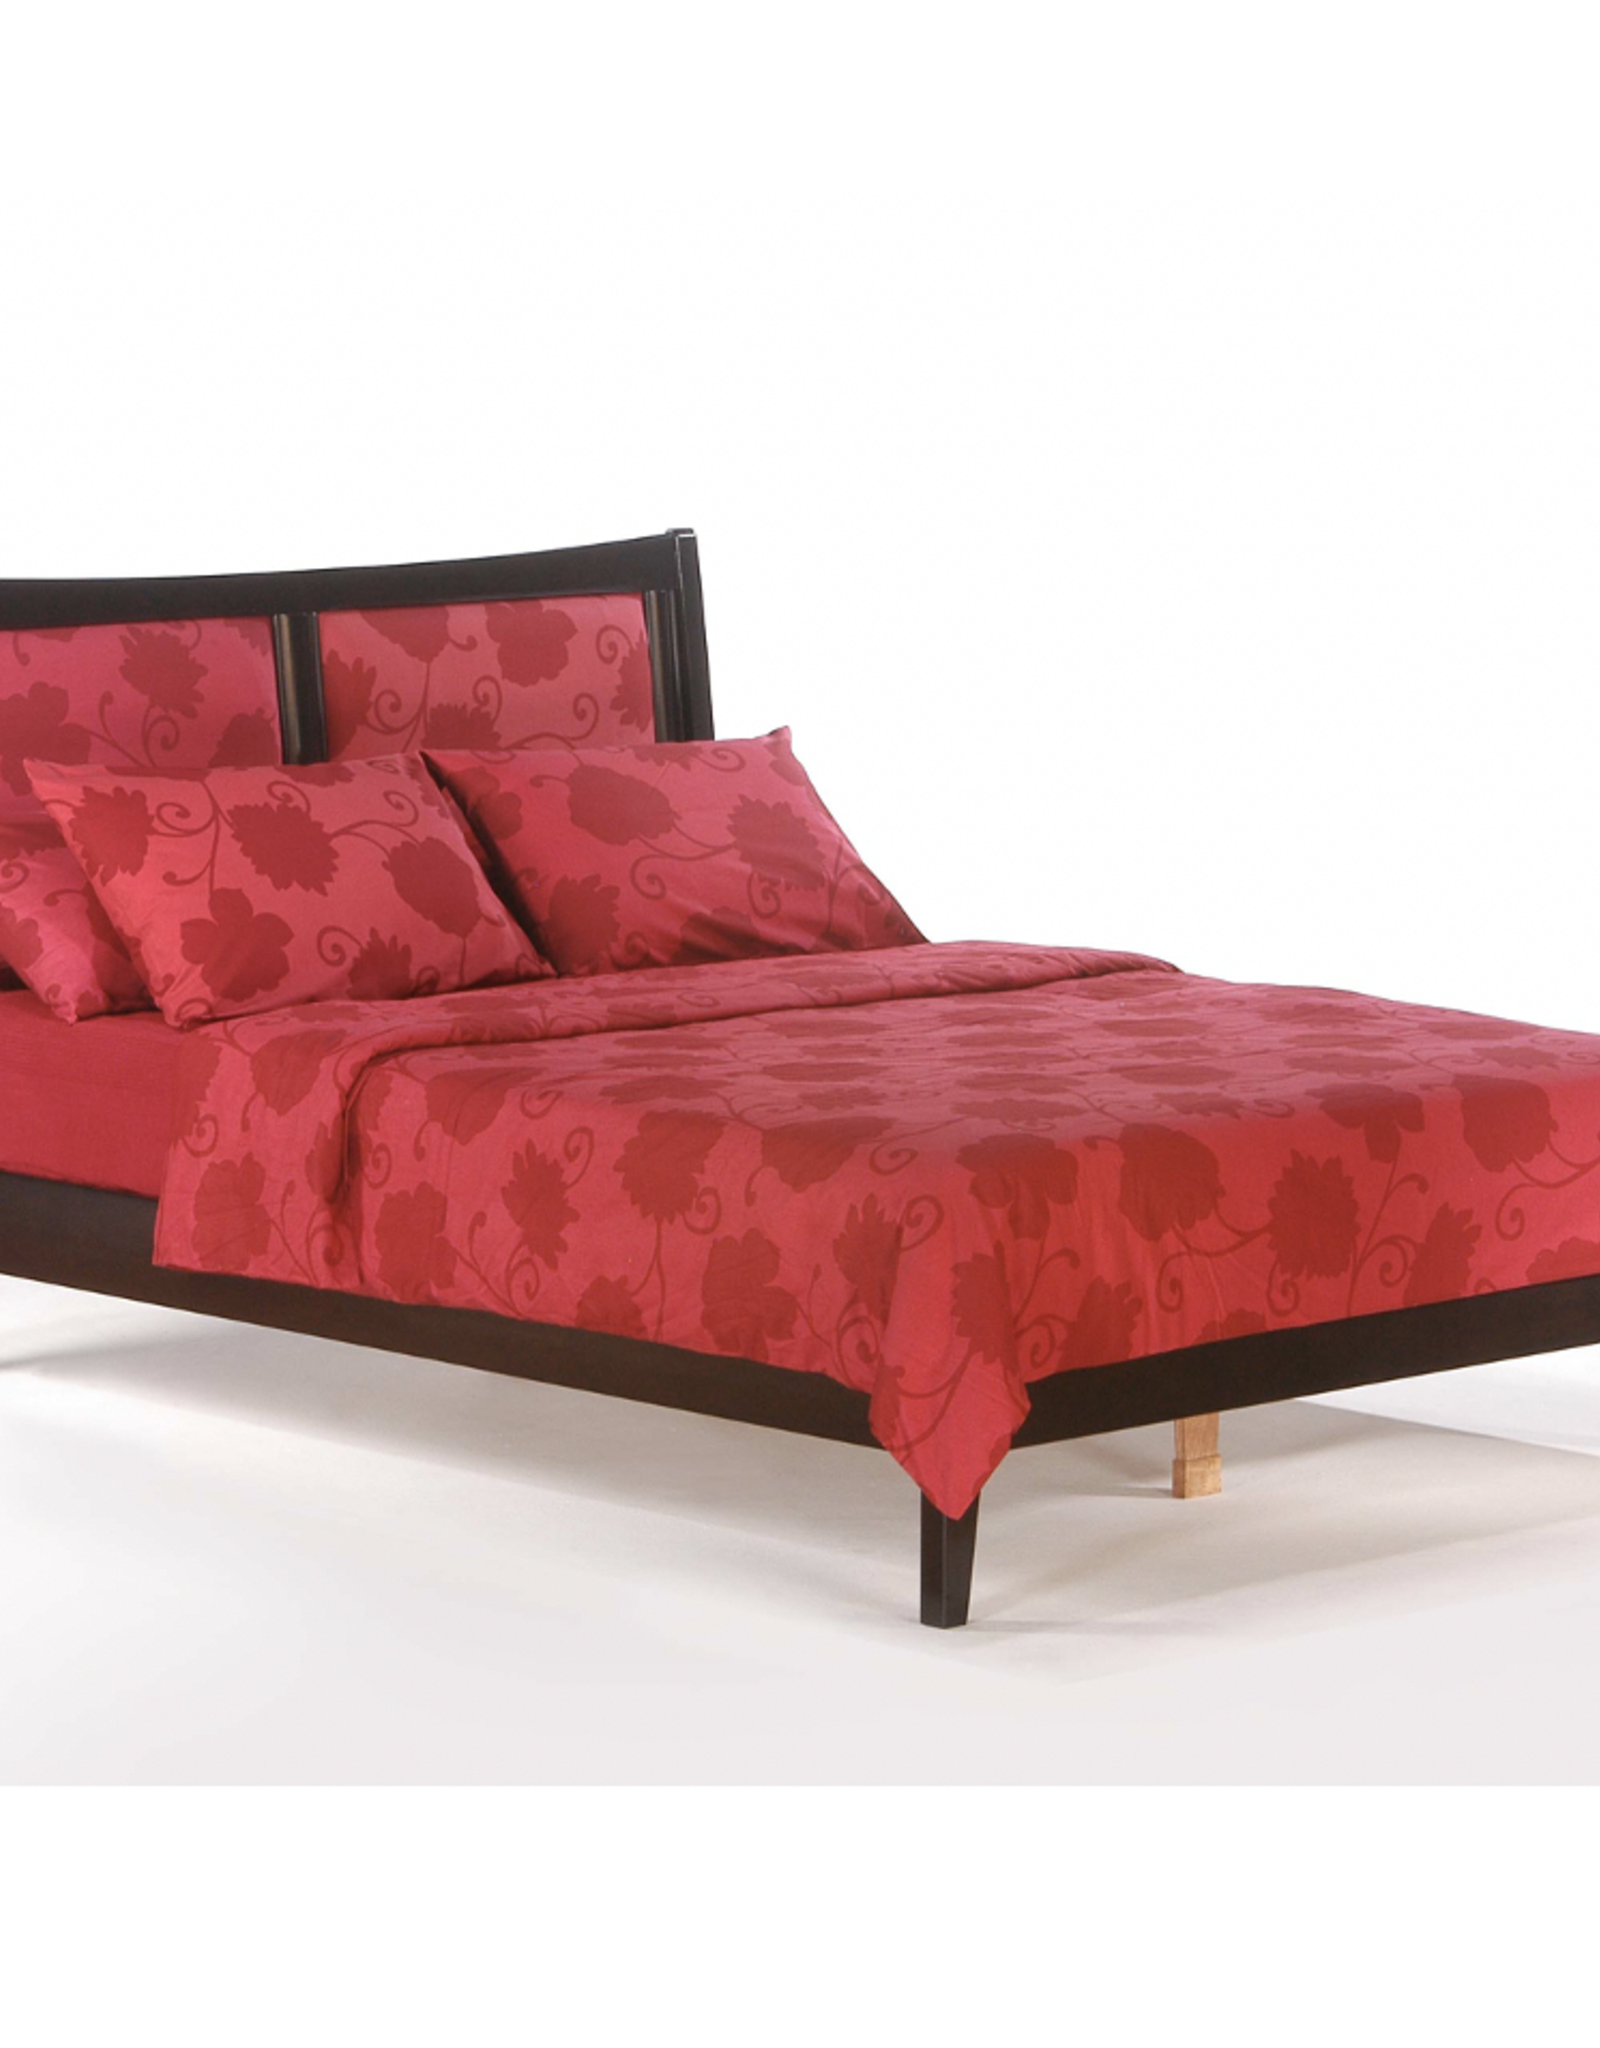 Chameleon Platform Bed - Comes in Fives Colors